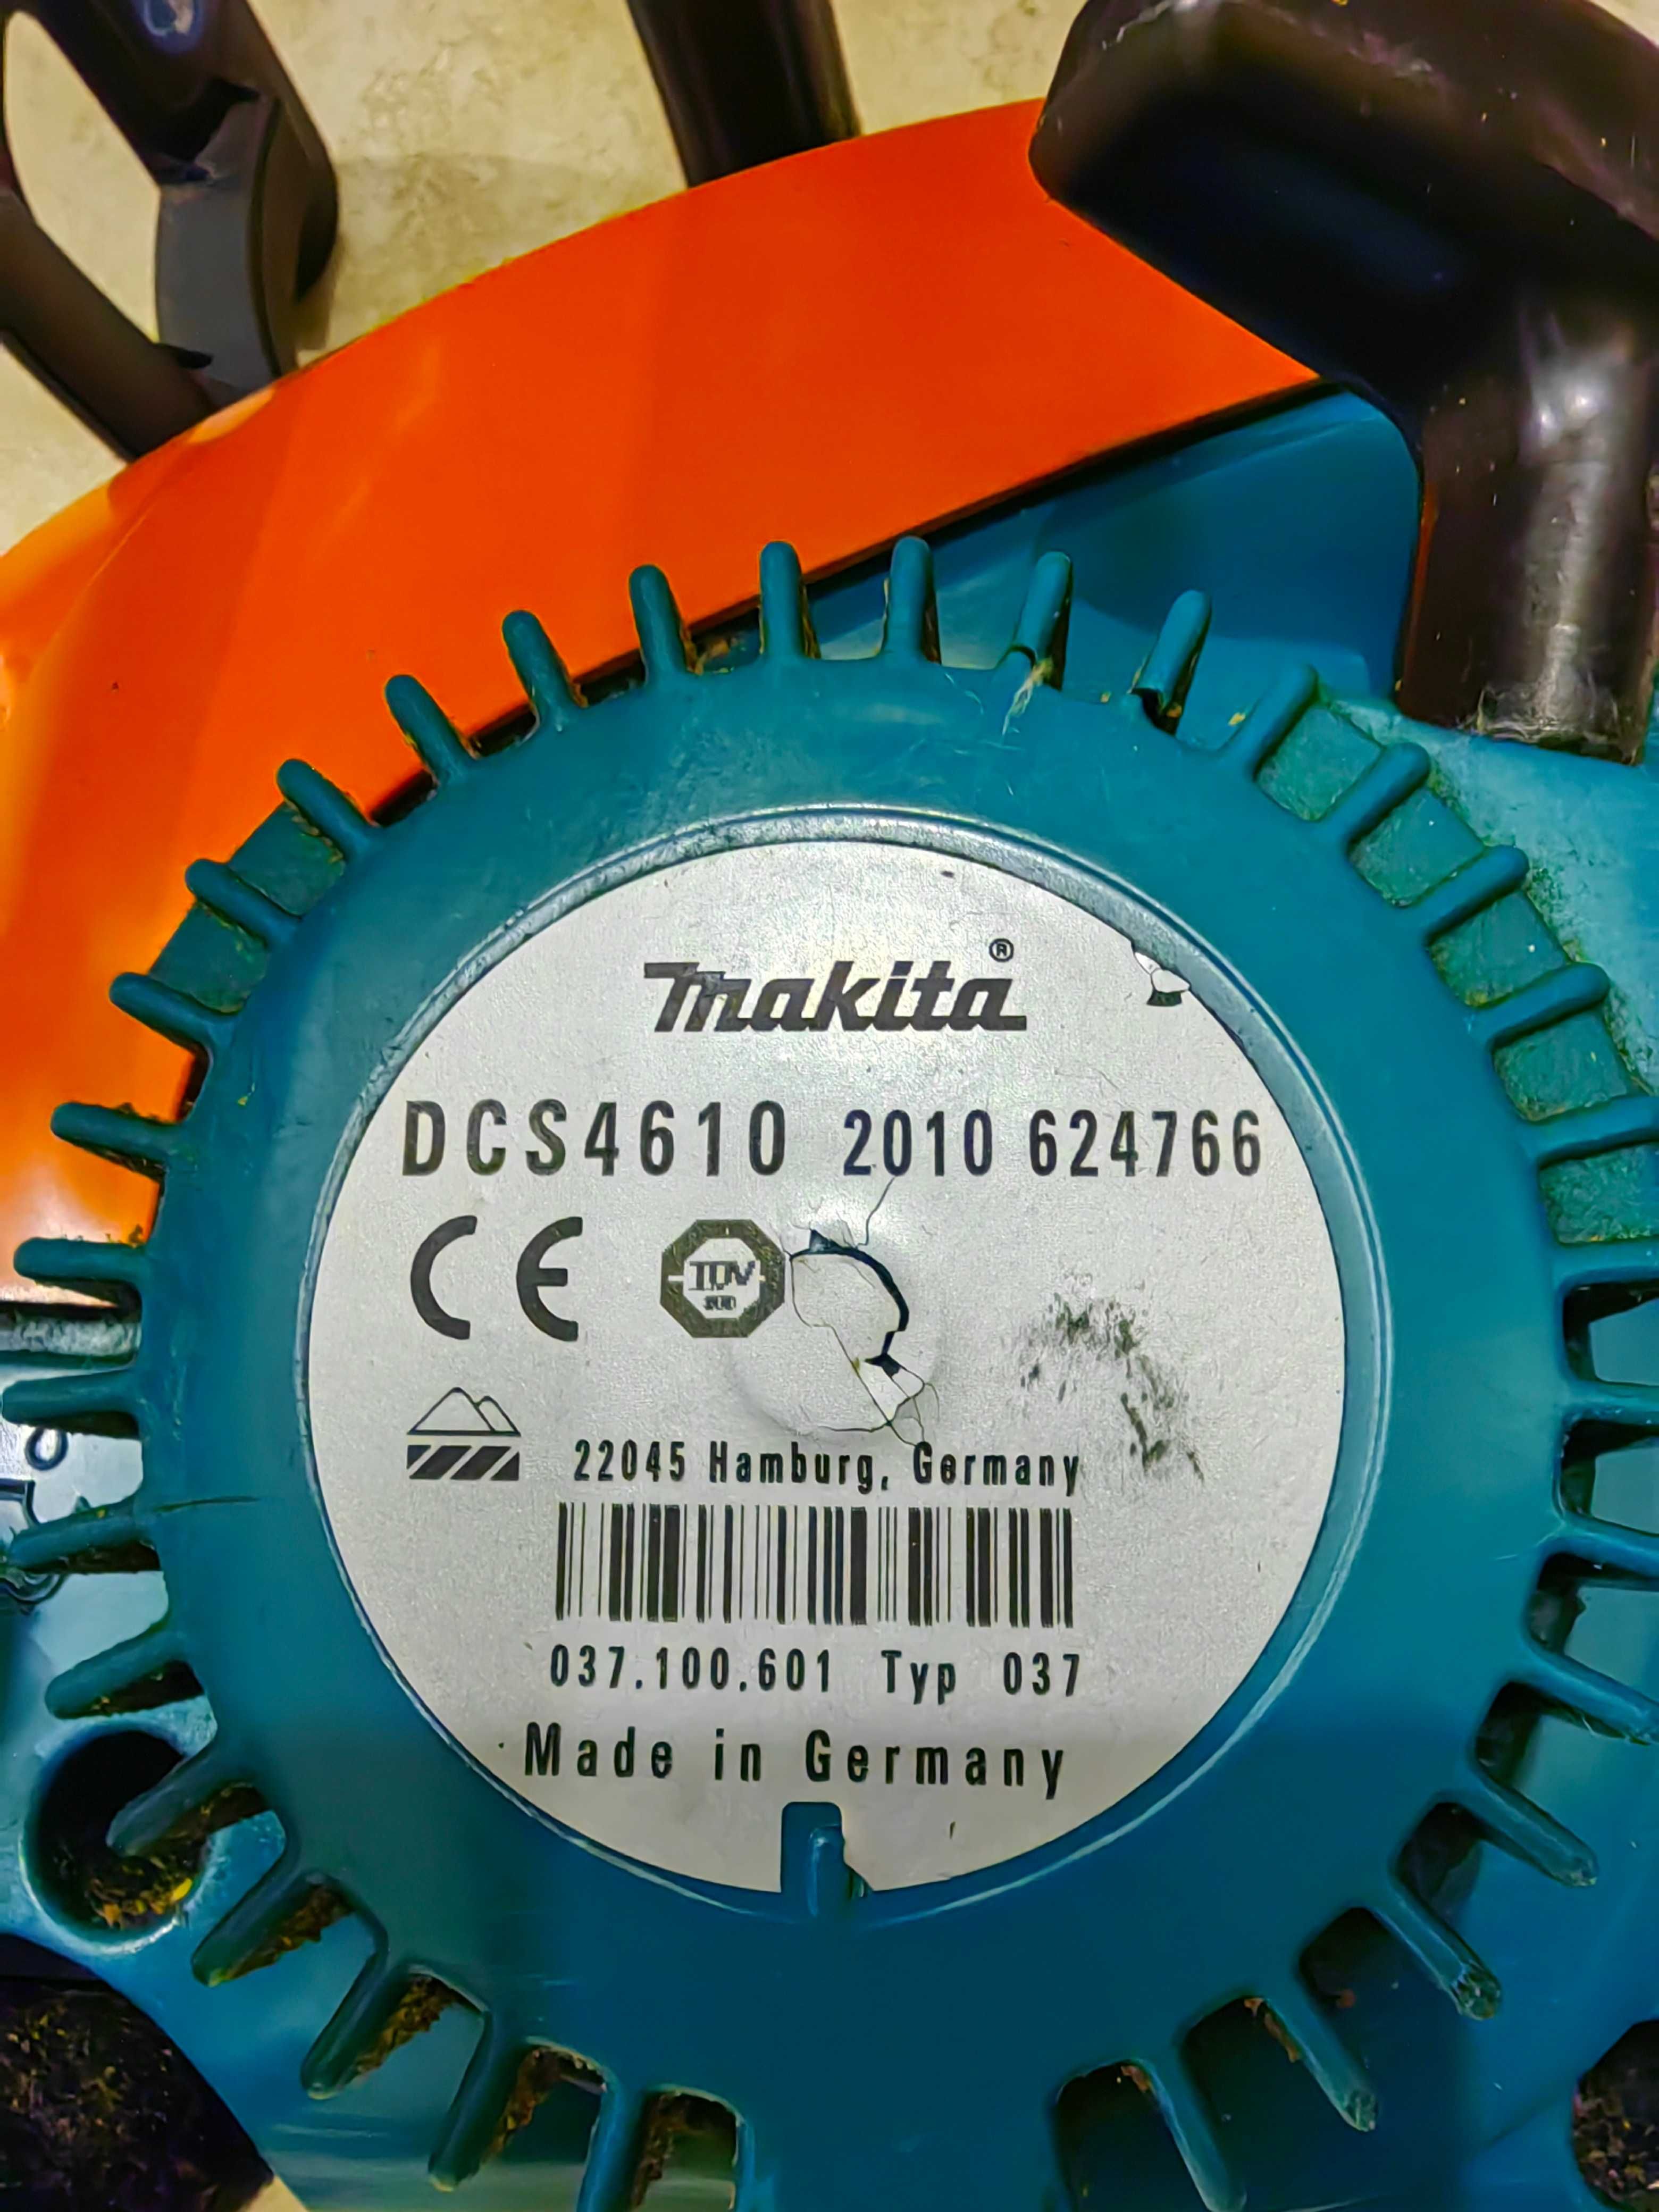 Makita DCS 4610
Made in Germany